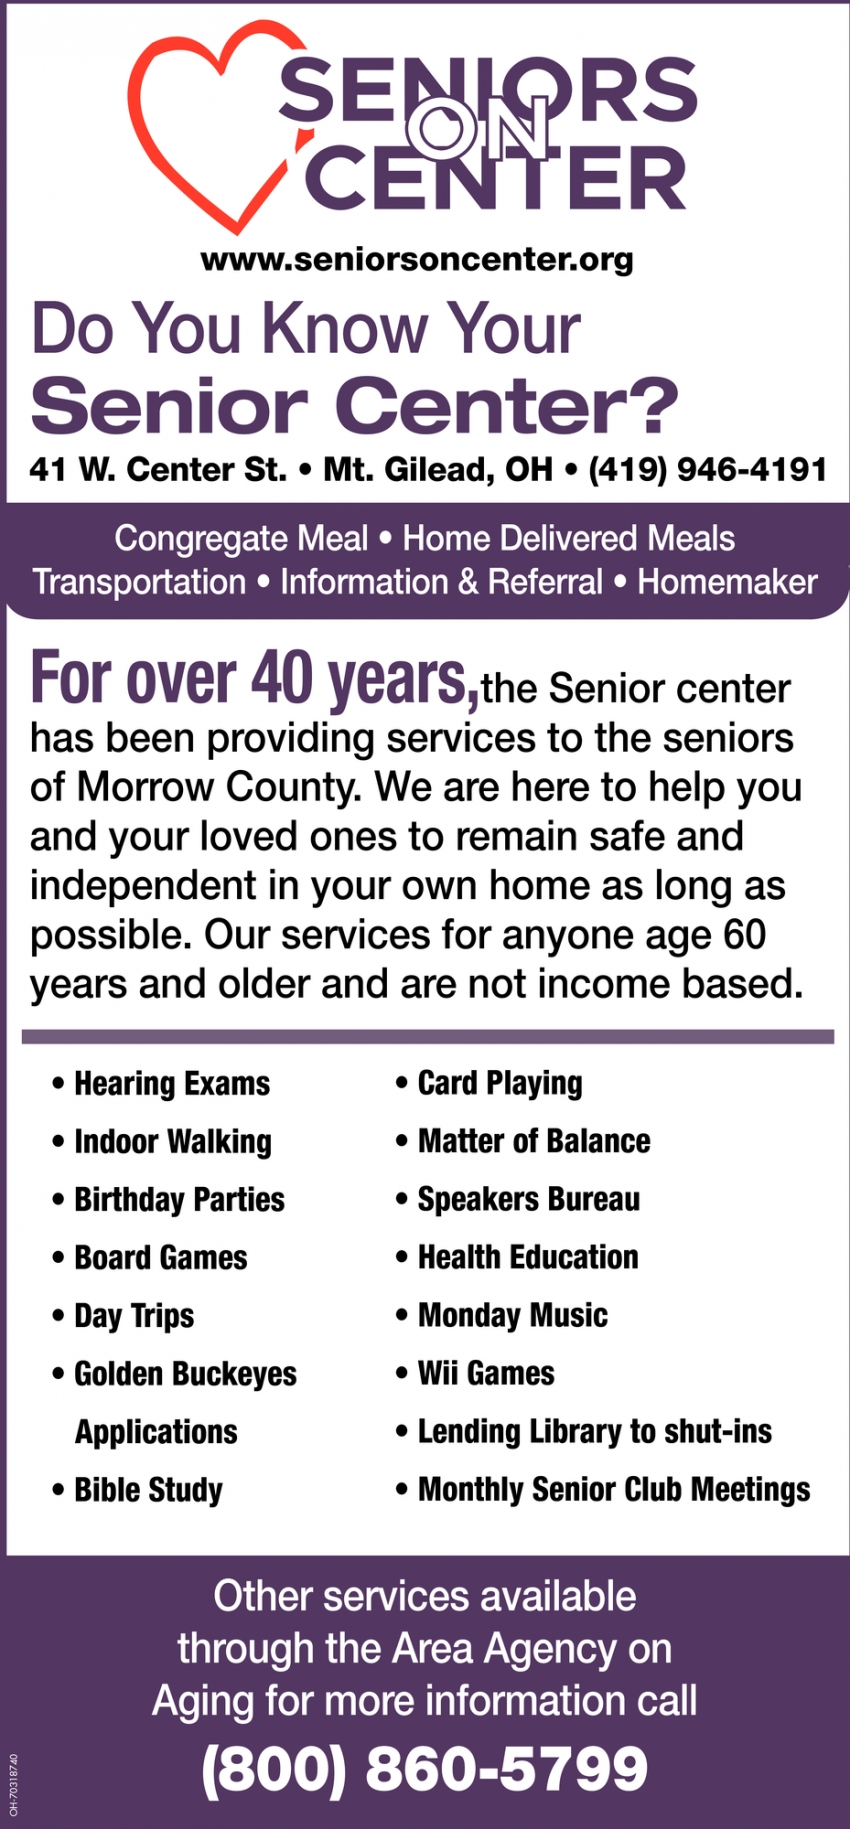 Do You Know Your Senior Center?